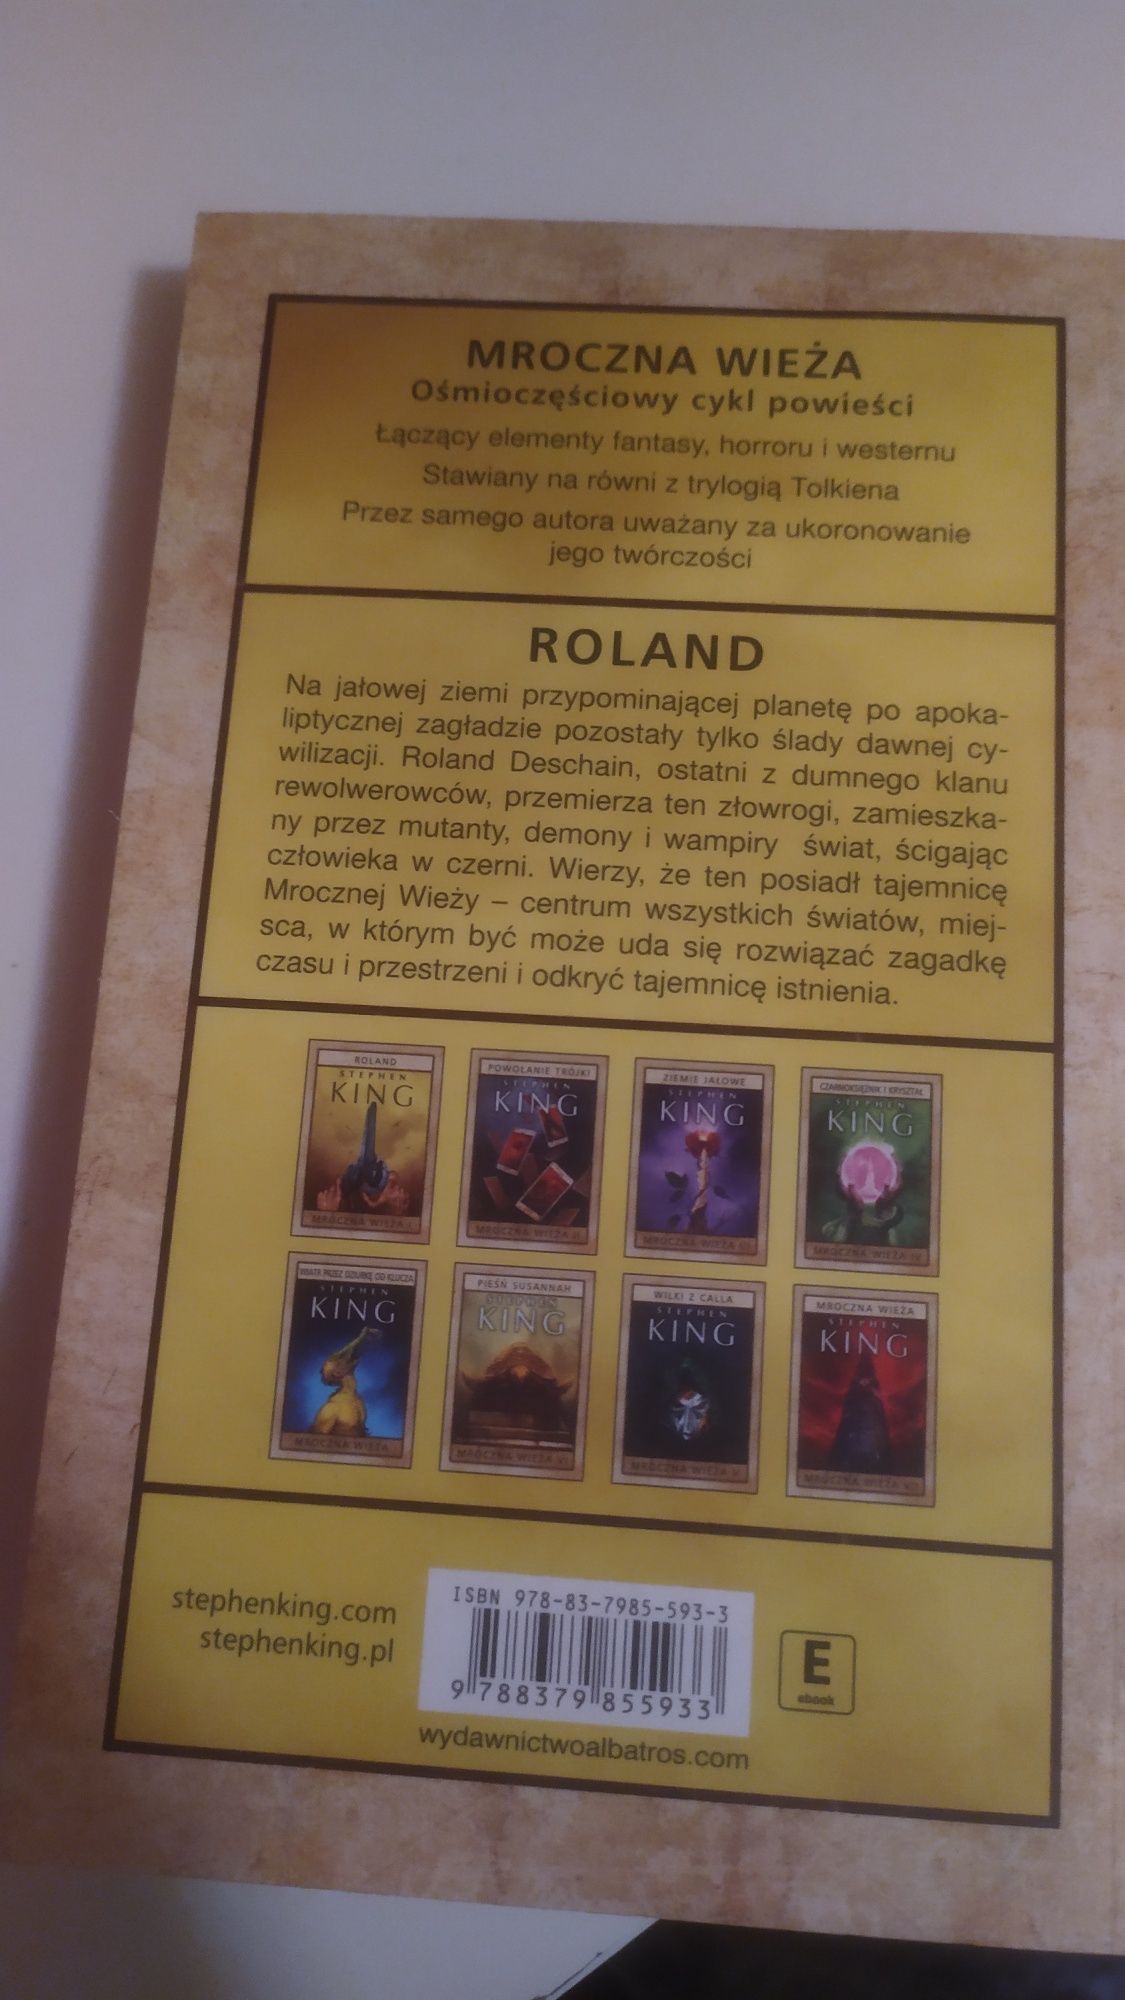 Stephen King  Roland Mroczna Wieża 1